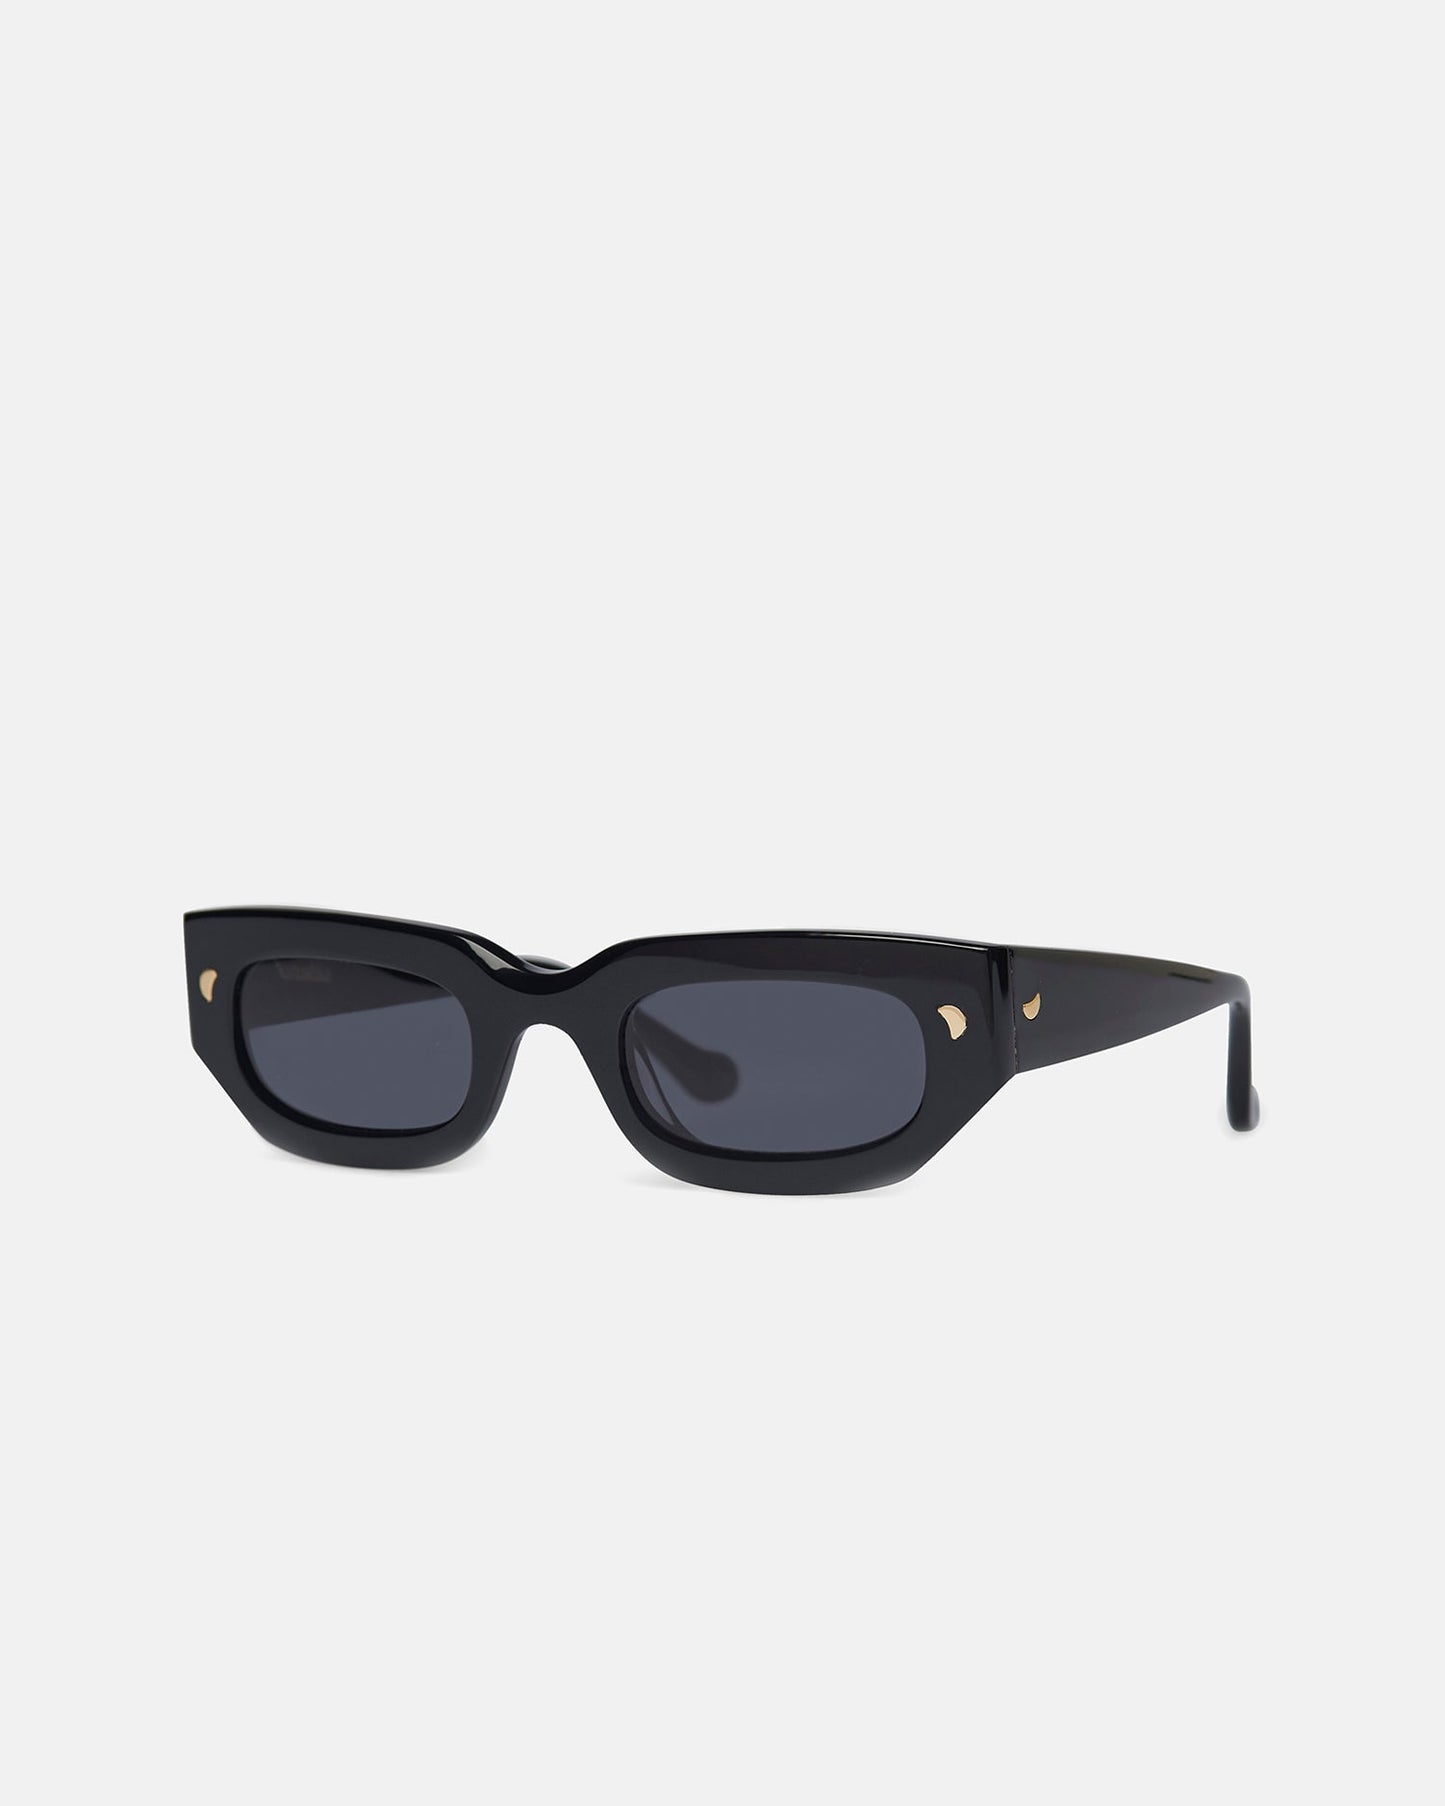 Kadee - Bio-Plastic D-Frame Sunglasses - Grey/Black